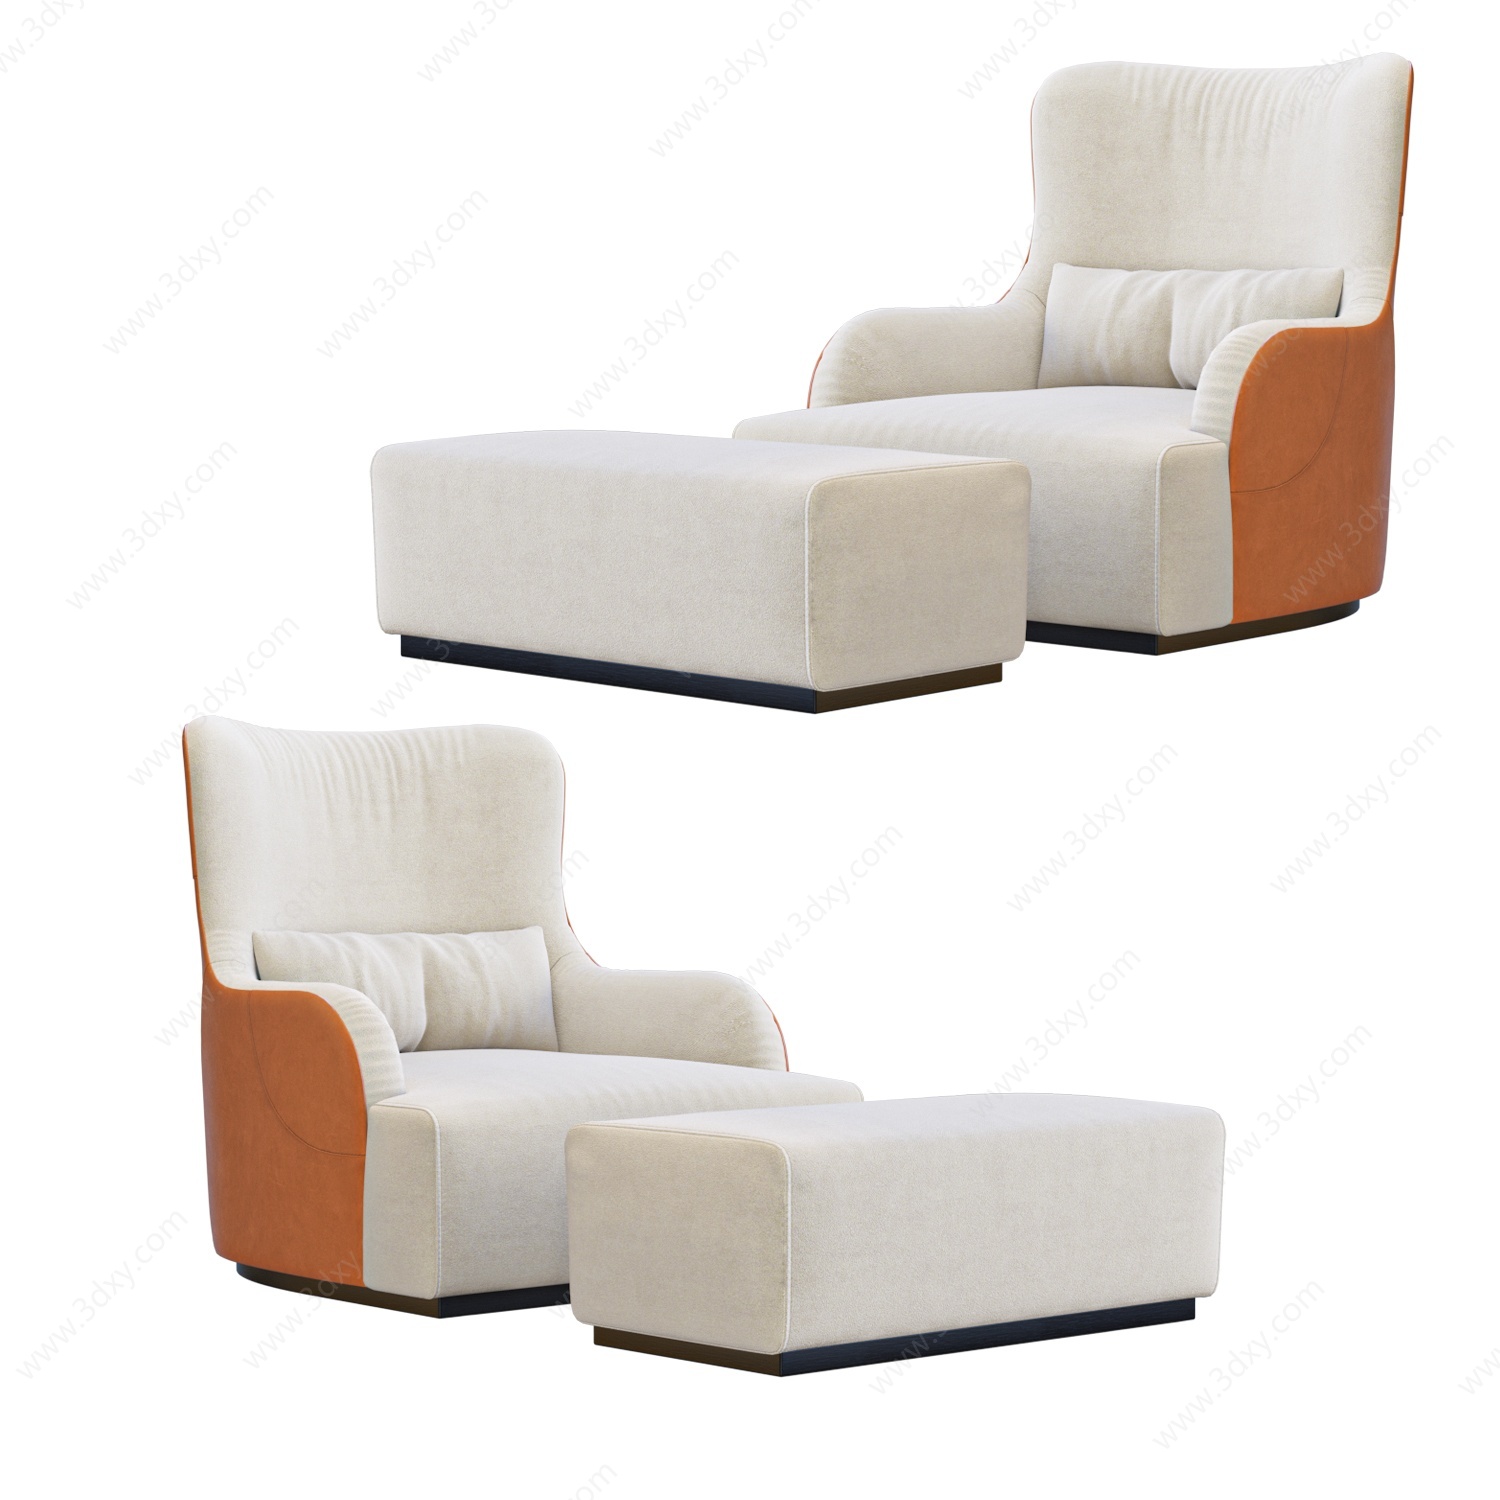 现代布艺沙发椅椅凳组合3D模型